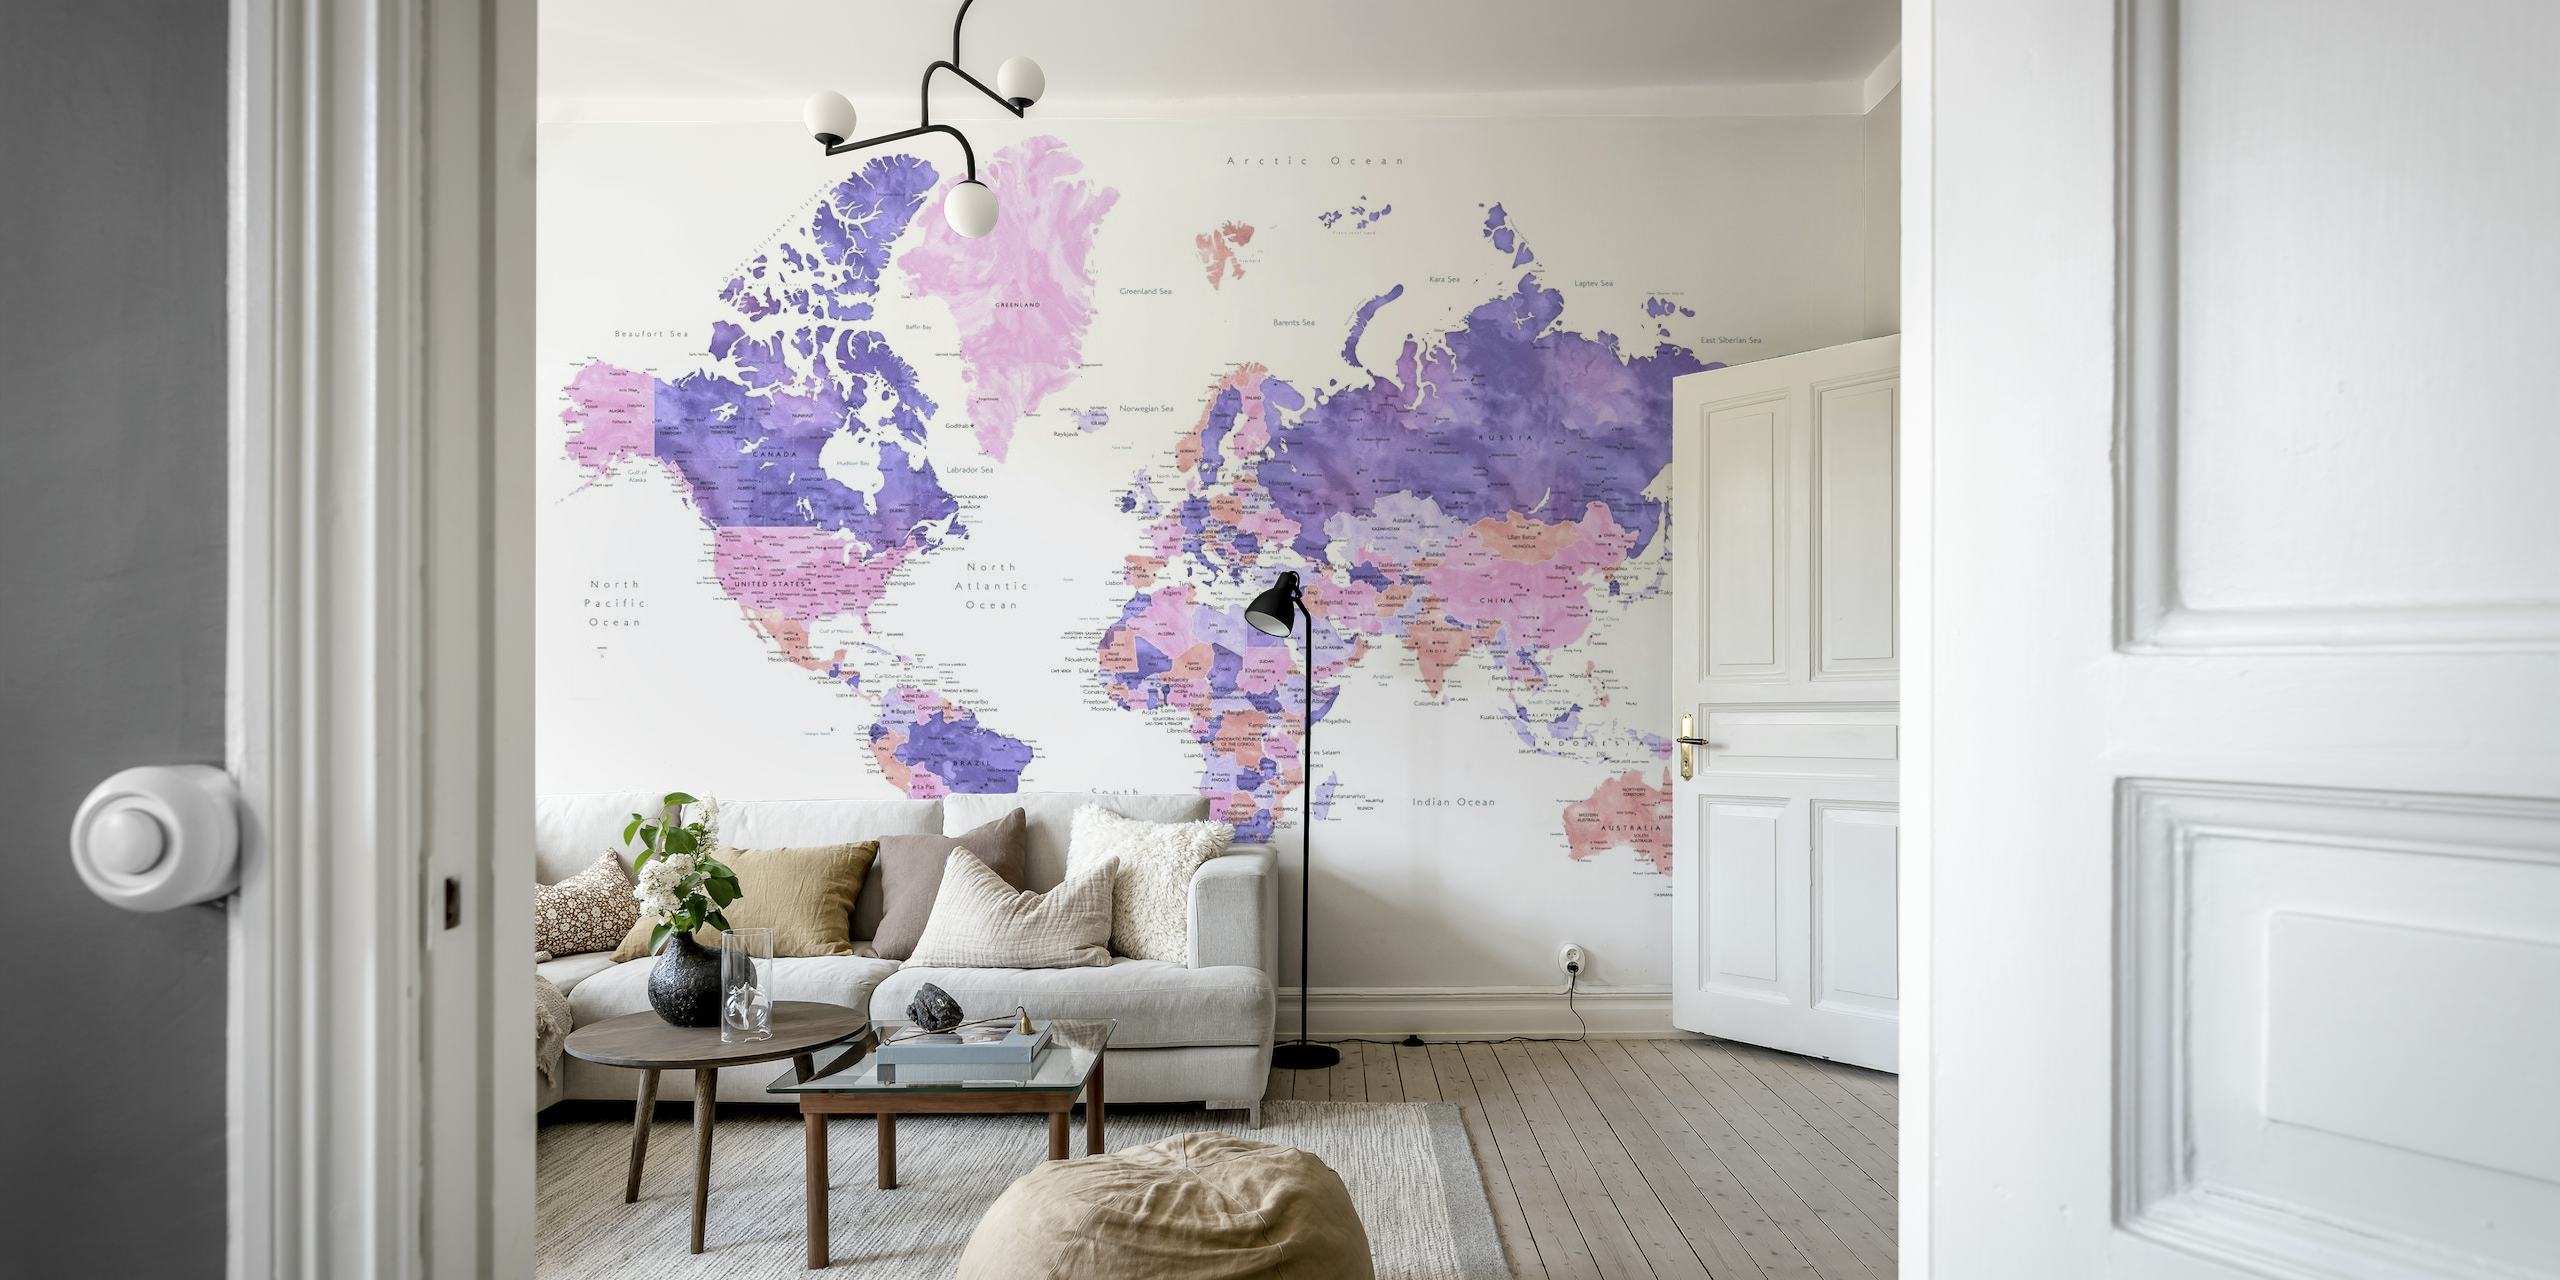 Kunstnerisk Brandie-verdenskart med byveggmaleri i livlige farger